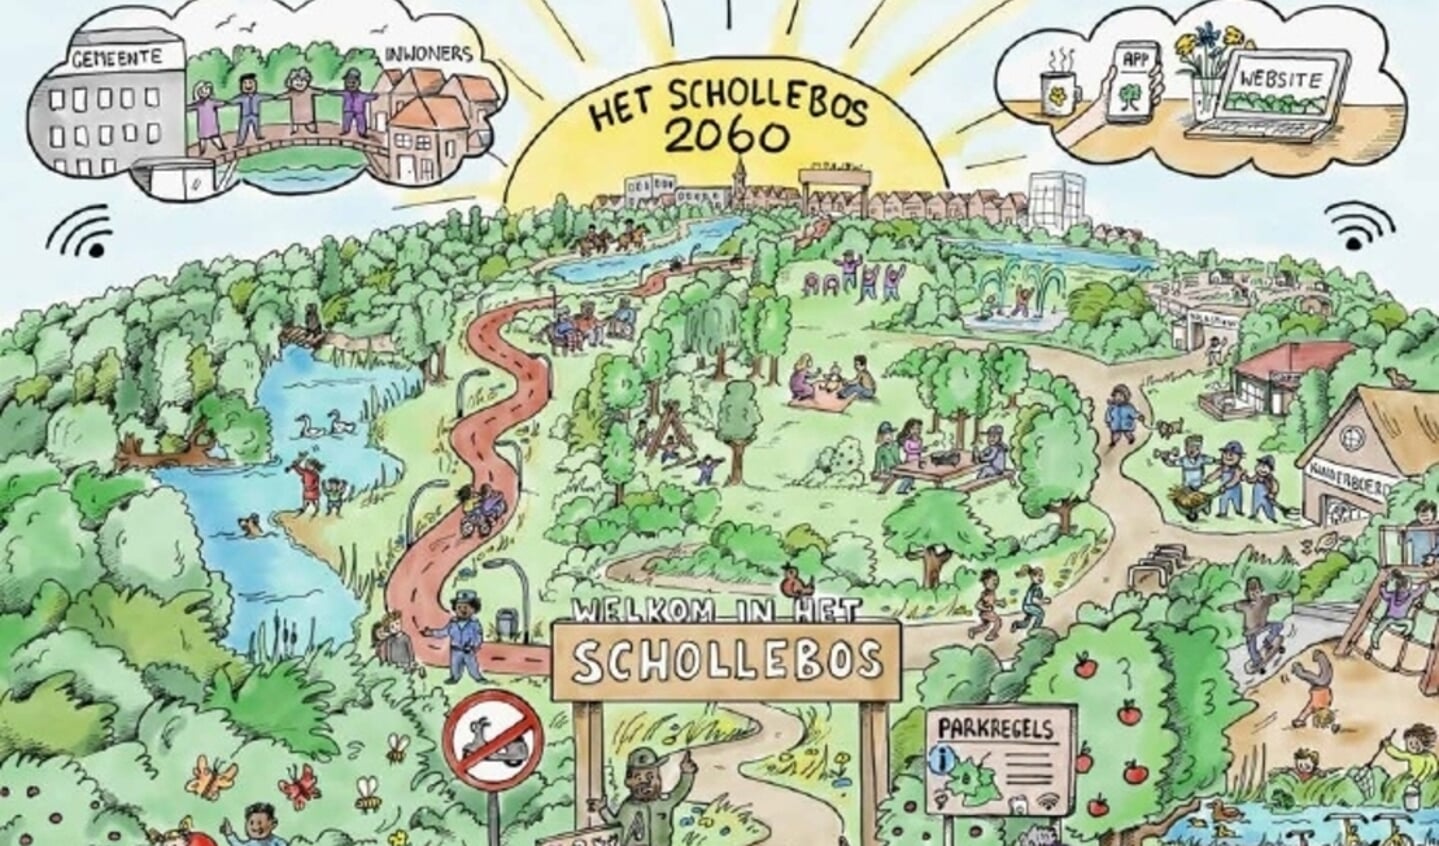 Vorig jaar is er een enquête gehouden over de toekomst van het Schollebos. 